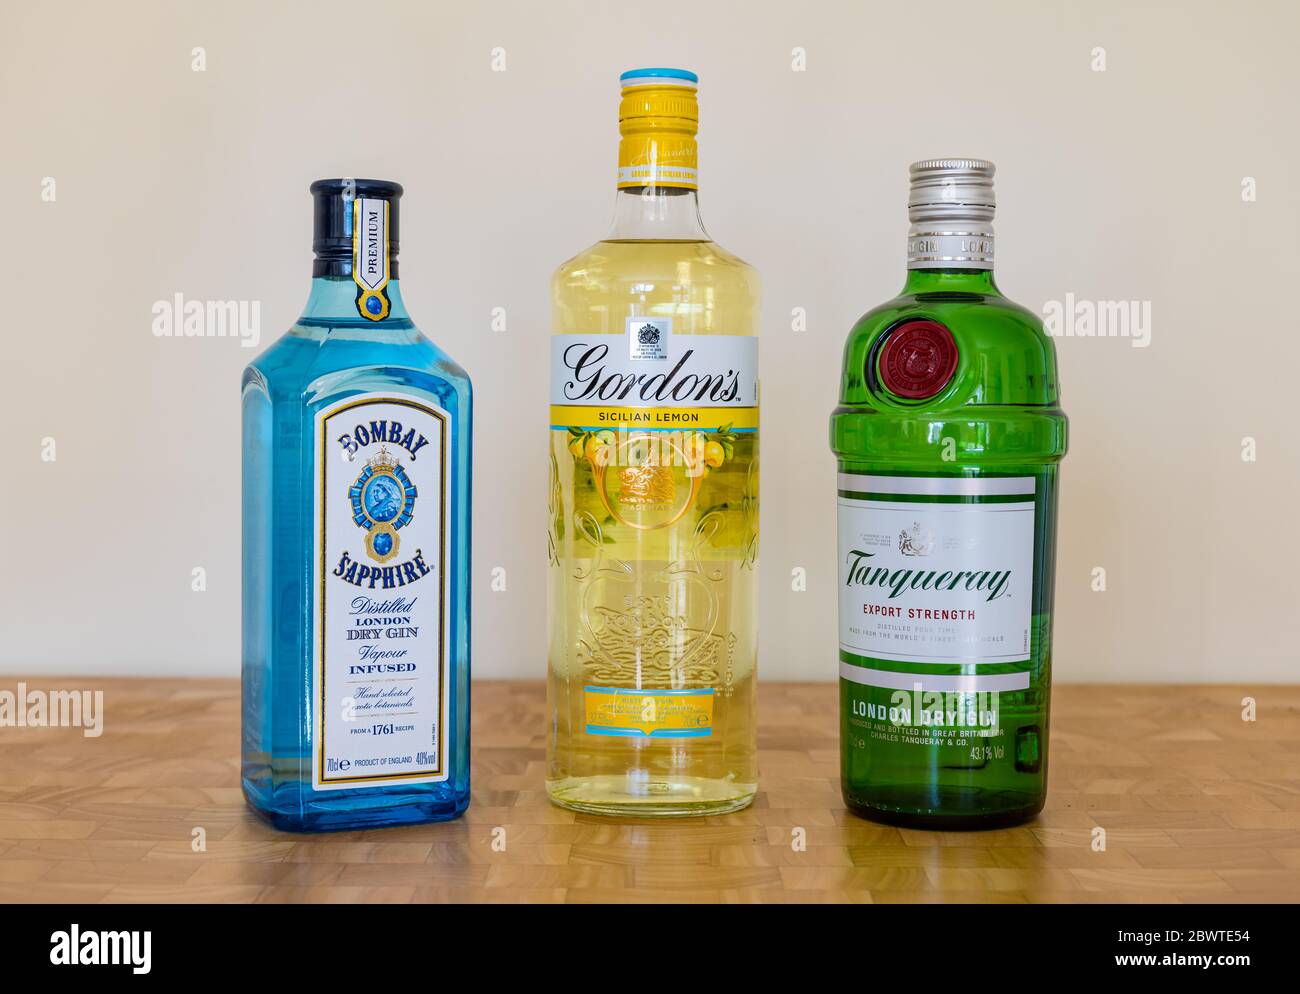 Marche di bottiglie di gin: Gin di lusso di Bombay Sapphire, gin di limone siciliano di Gordon & gin di resistenza di esportazione di Tanqueray Foto Stock